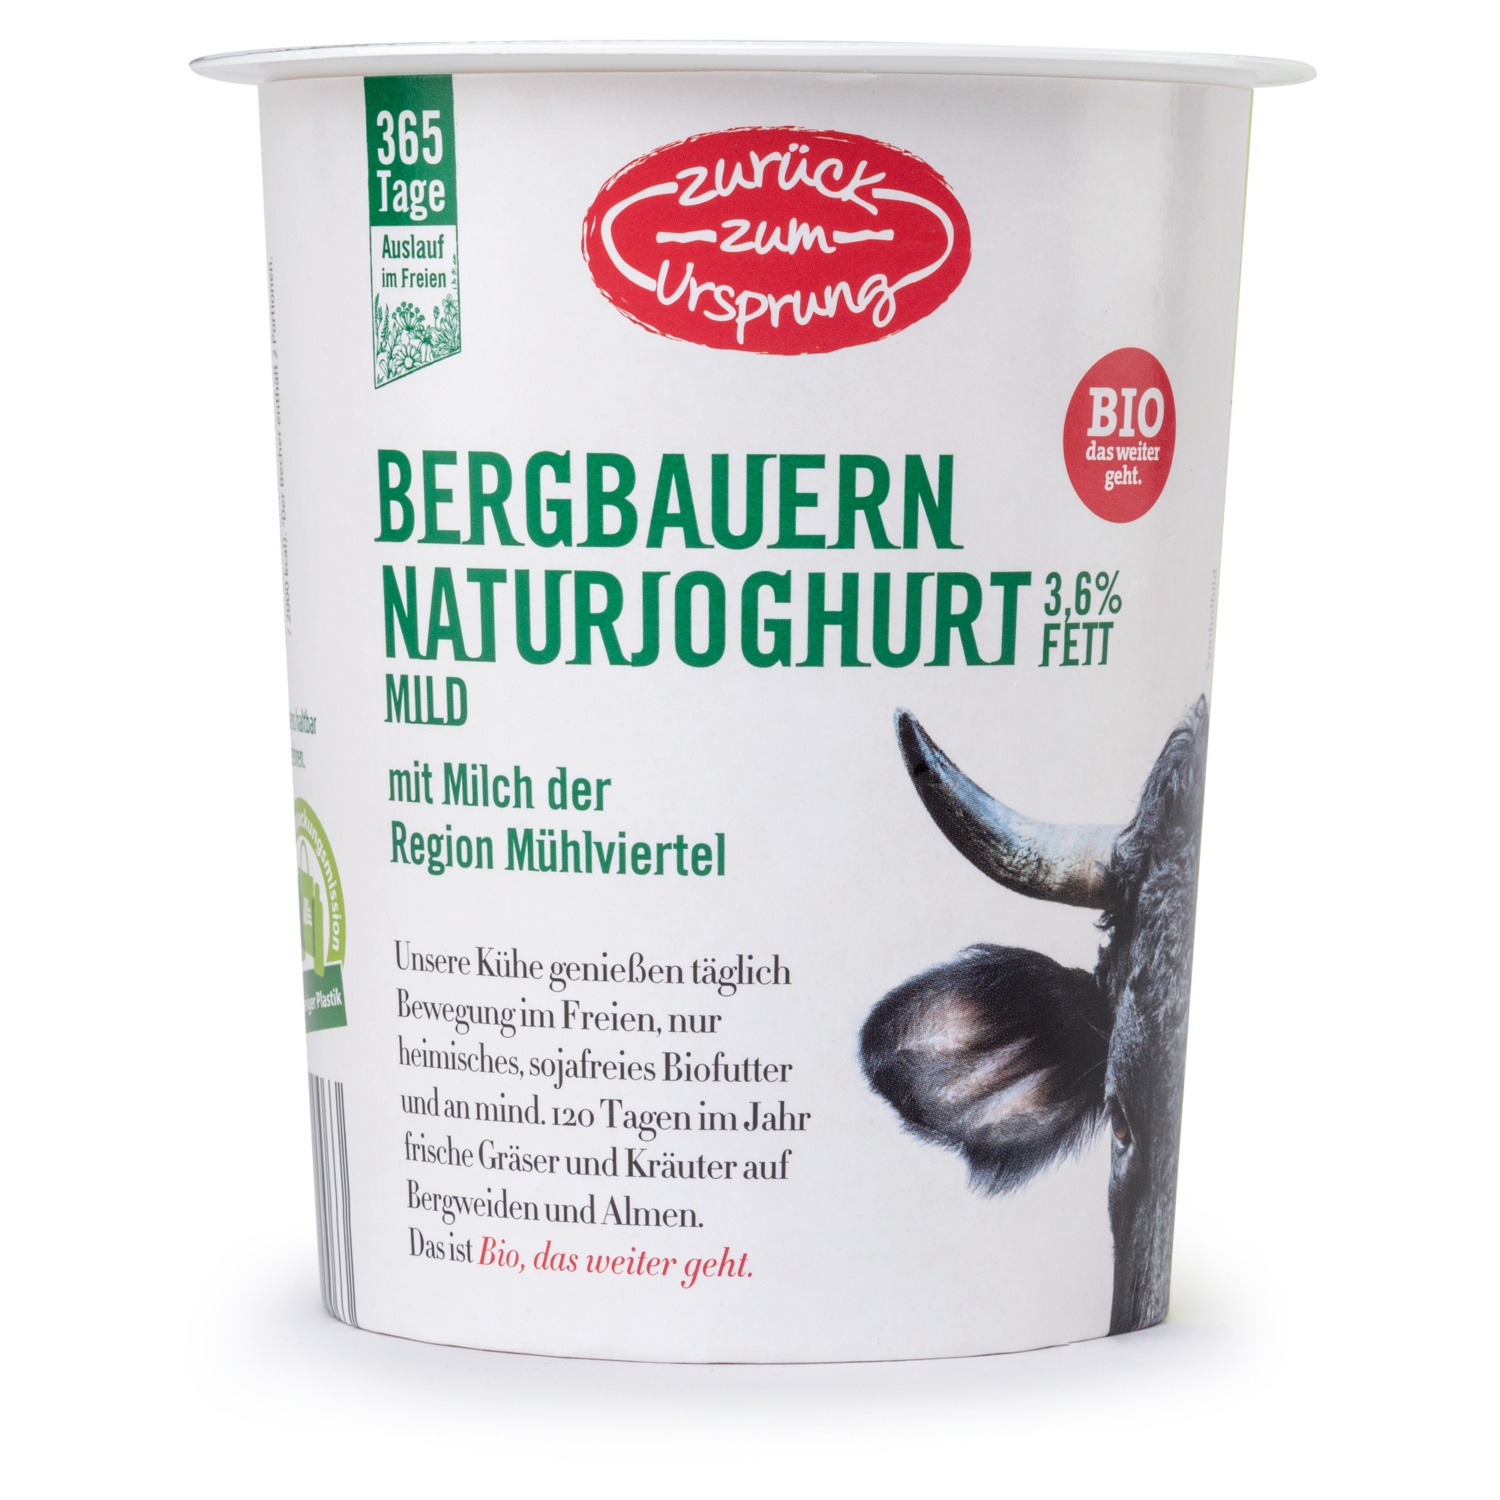 ZURÜCK ZUM URSPRUNG BIO-Bergbauern-Naturjoghurt 3,6% Fett